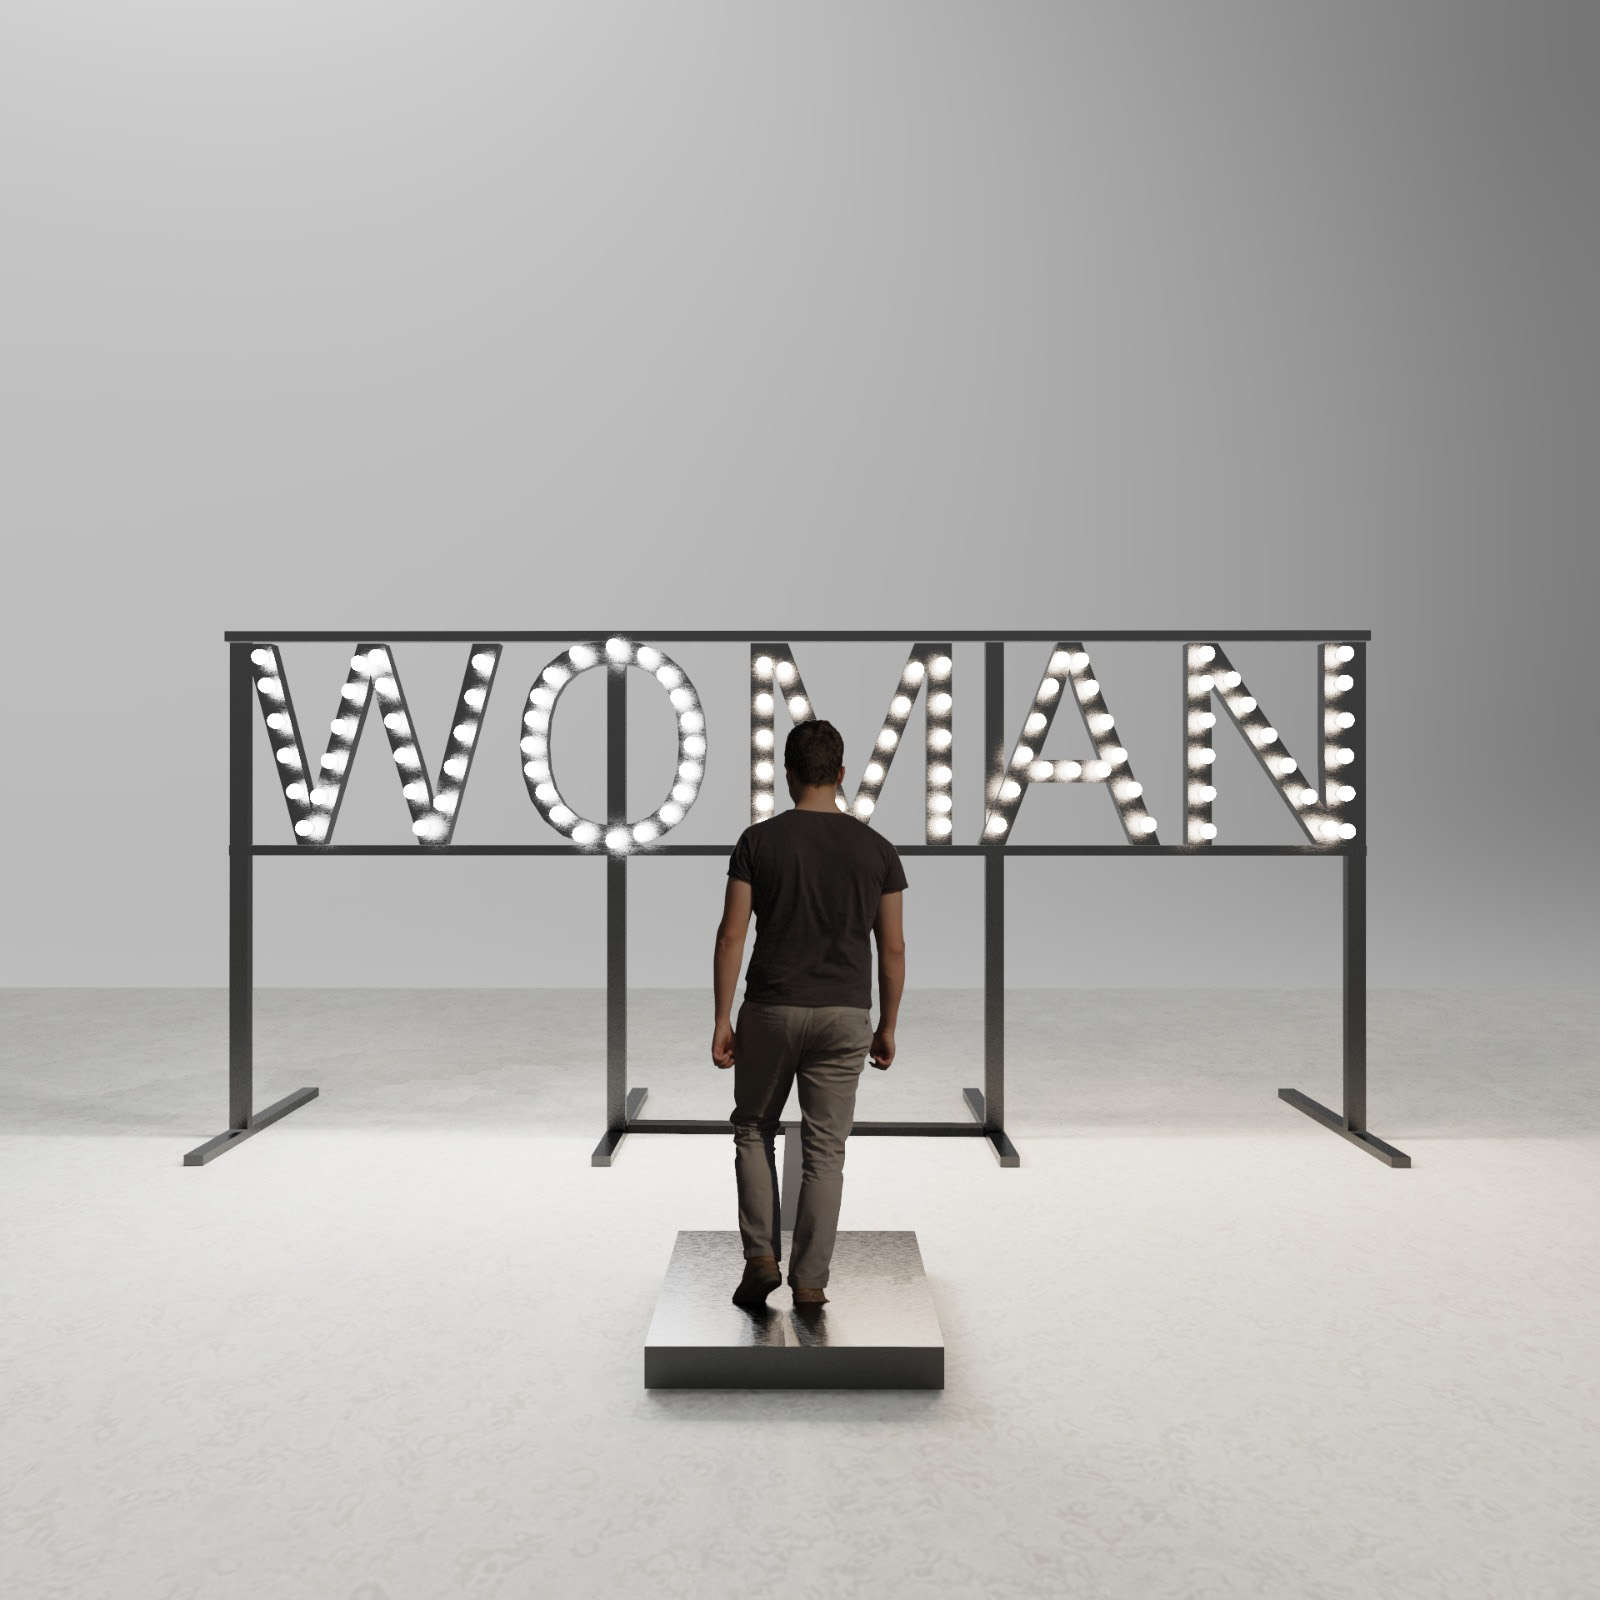 Martina Di Fenza, Wo-man, 2021, ferro, vetro, led, apparati elettronici, 300x180 cm, installation view 2